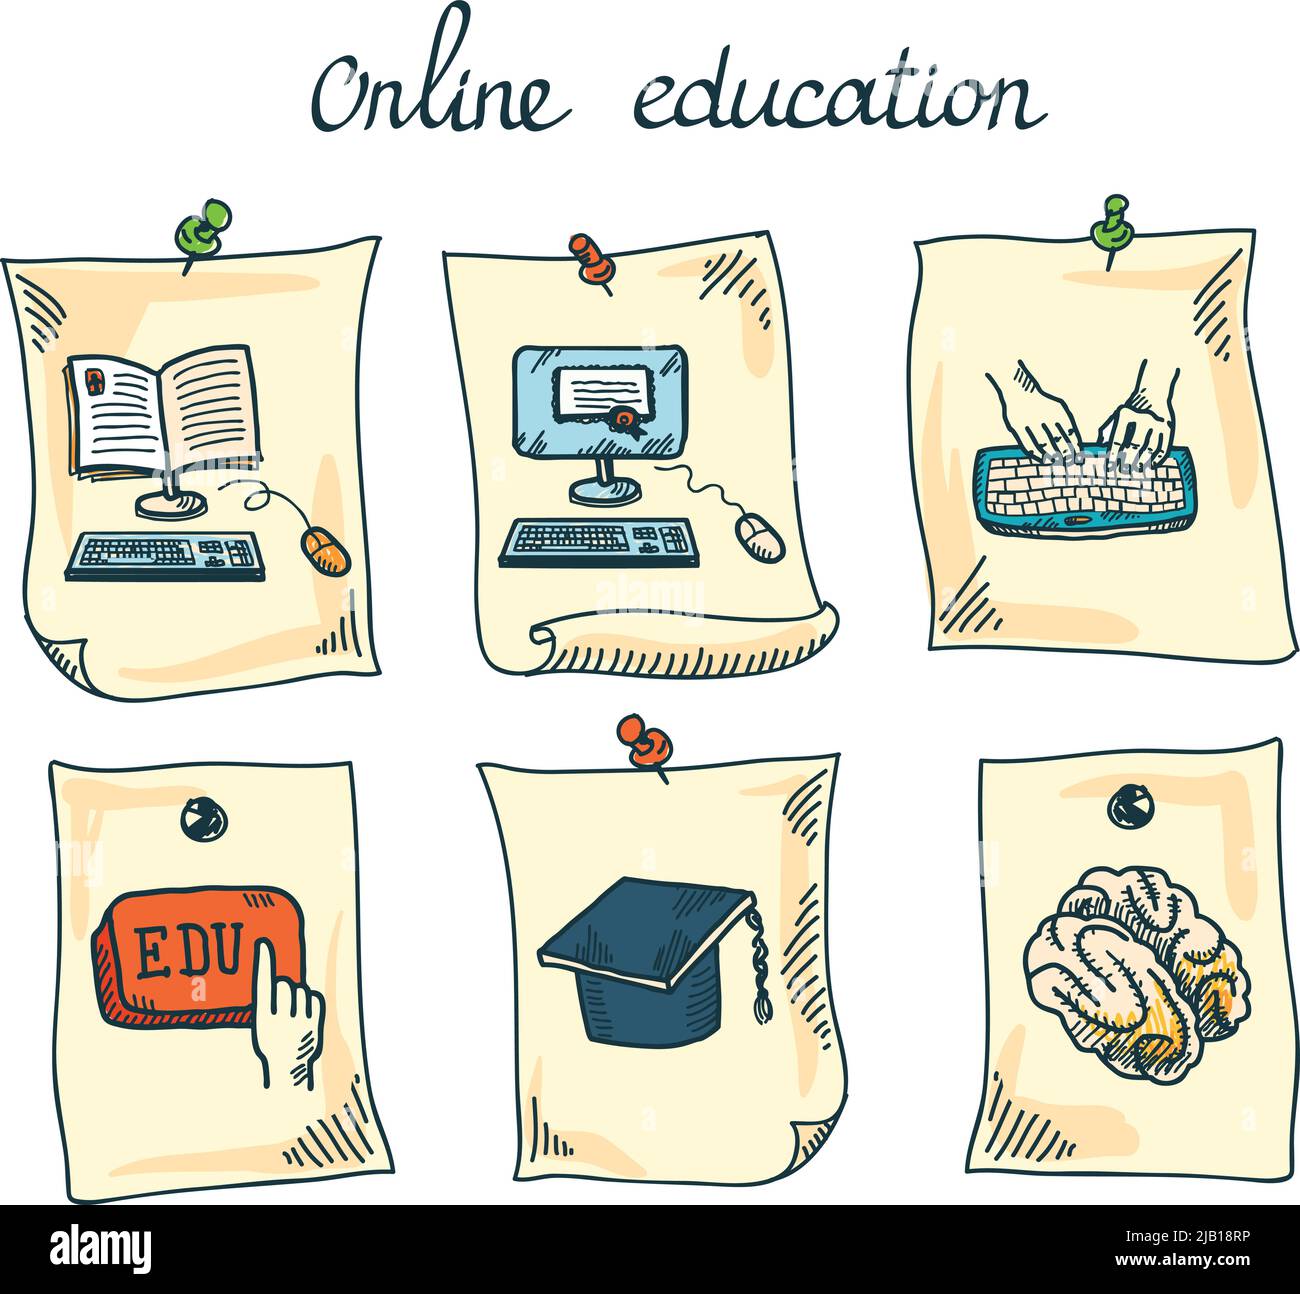 Online-Bildung e-Learning Webinar digitale Schule Aufkleber Set isolierte Vektor-Illustration Stock Vektor